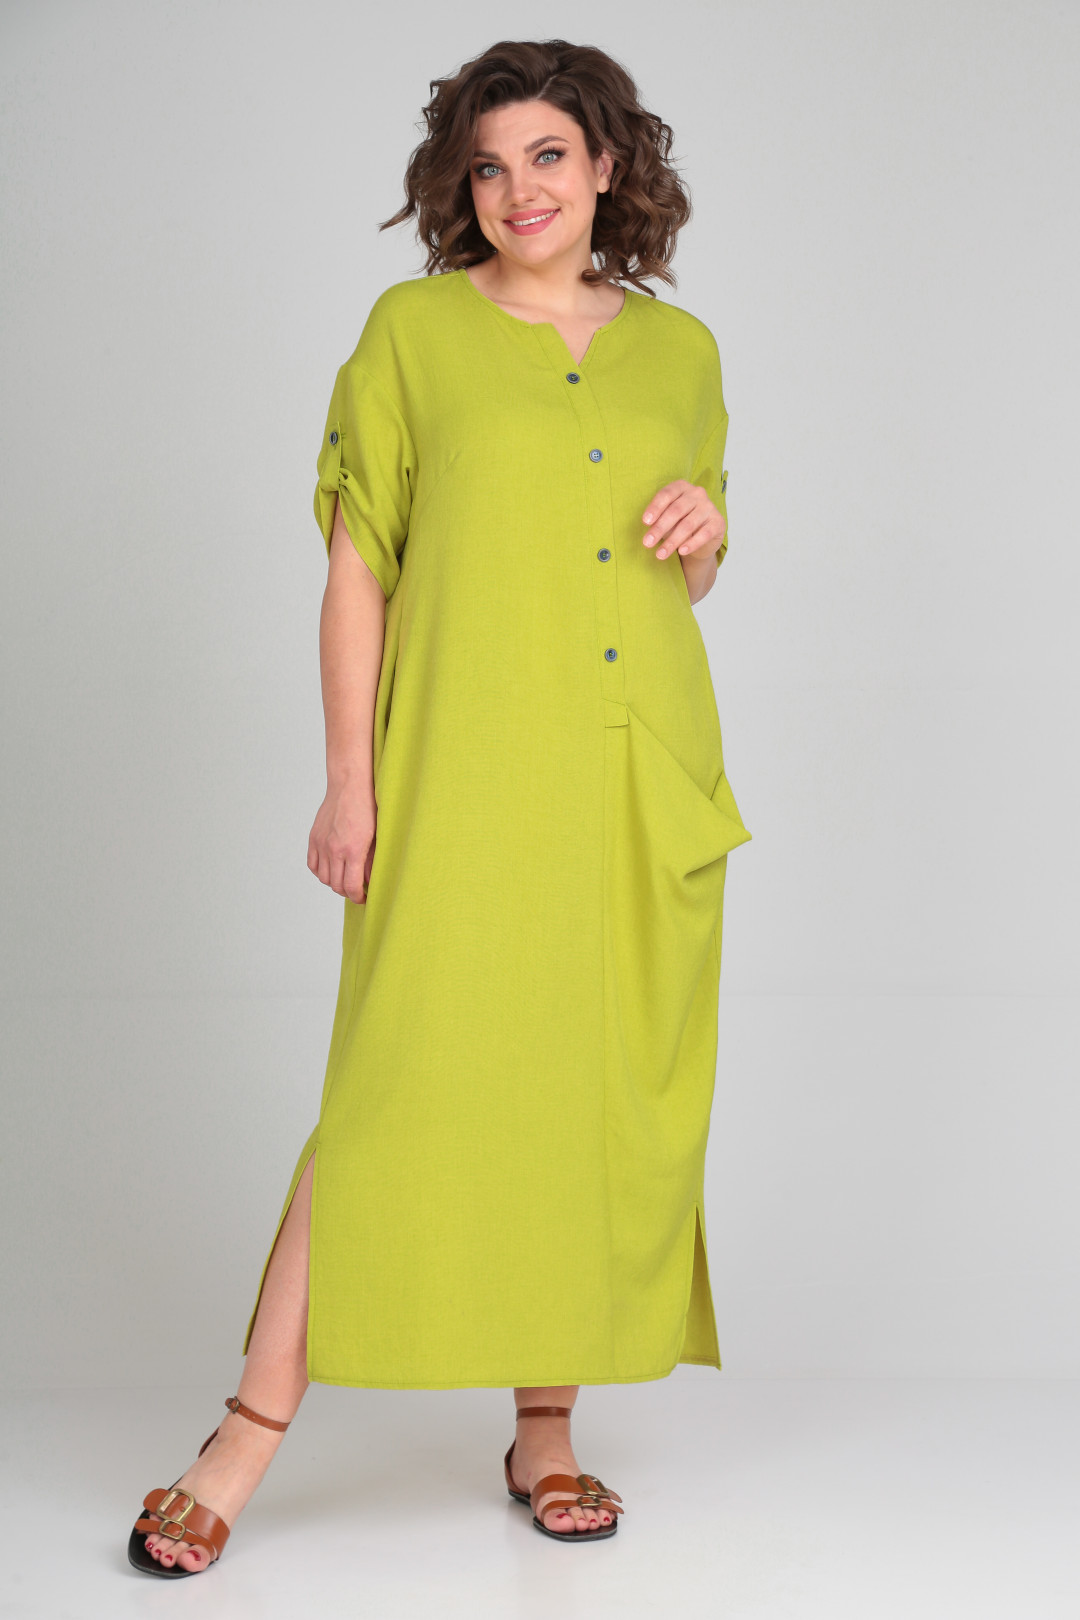 Платье Мишель Шик 2094/3 лаймовый (желто-зеленый)